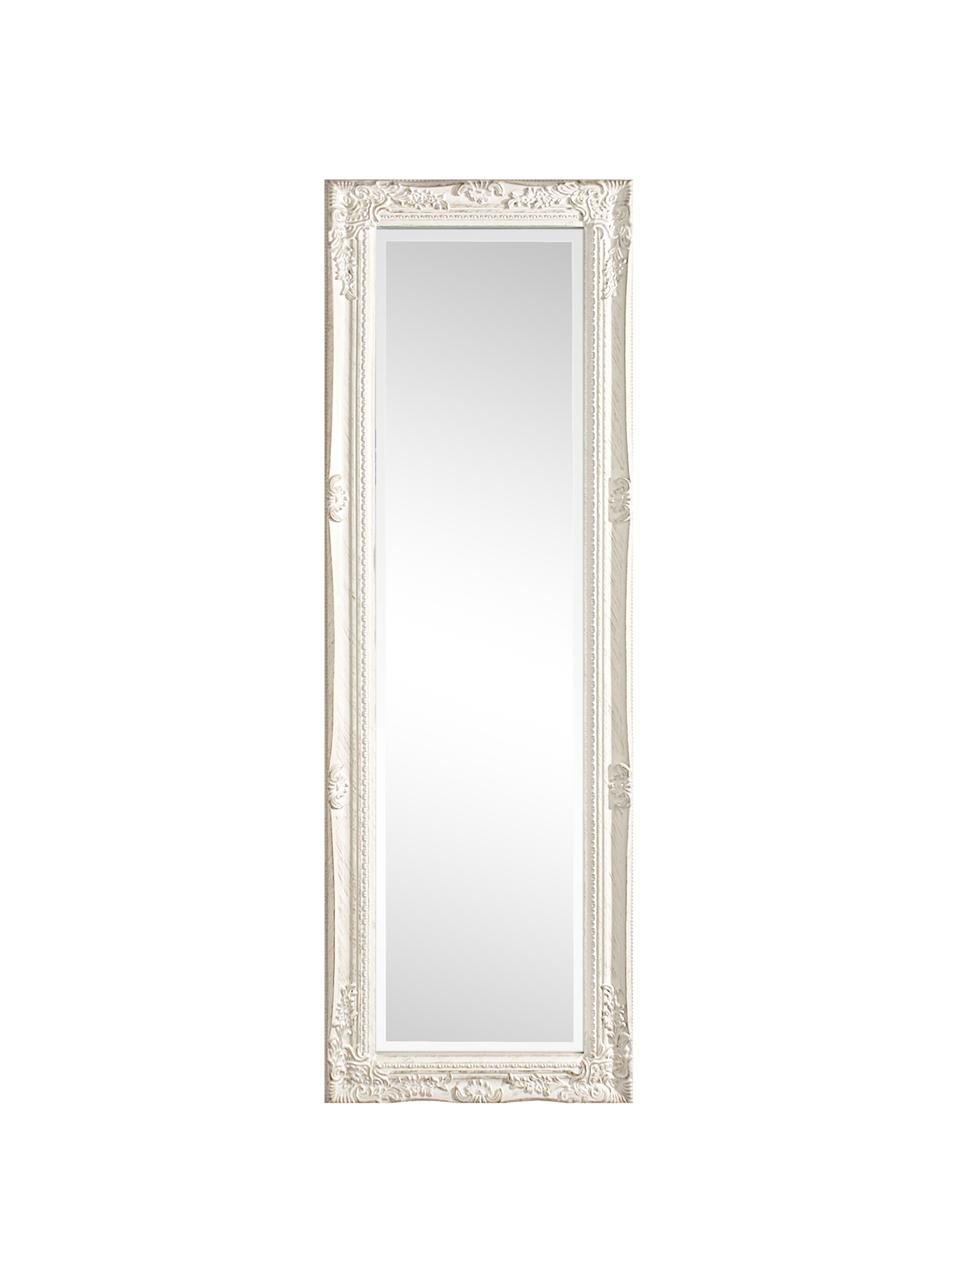 Eckiger Wandspiegel Miro mit weissem Paulowniaholzrahmen, Rahmen: Paulowniaholz, beschichte, Spiegelfläche: Spiegelglas, Weiss, B 42 x H 132 cm